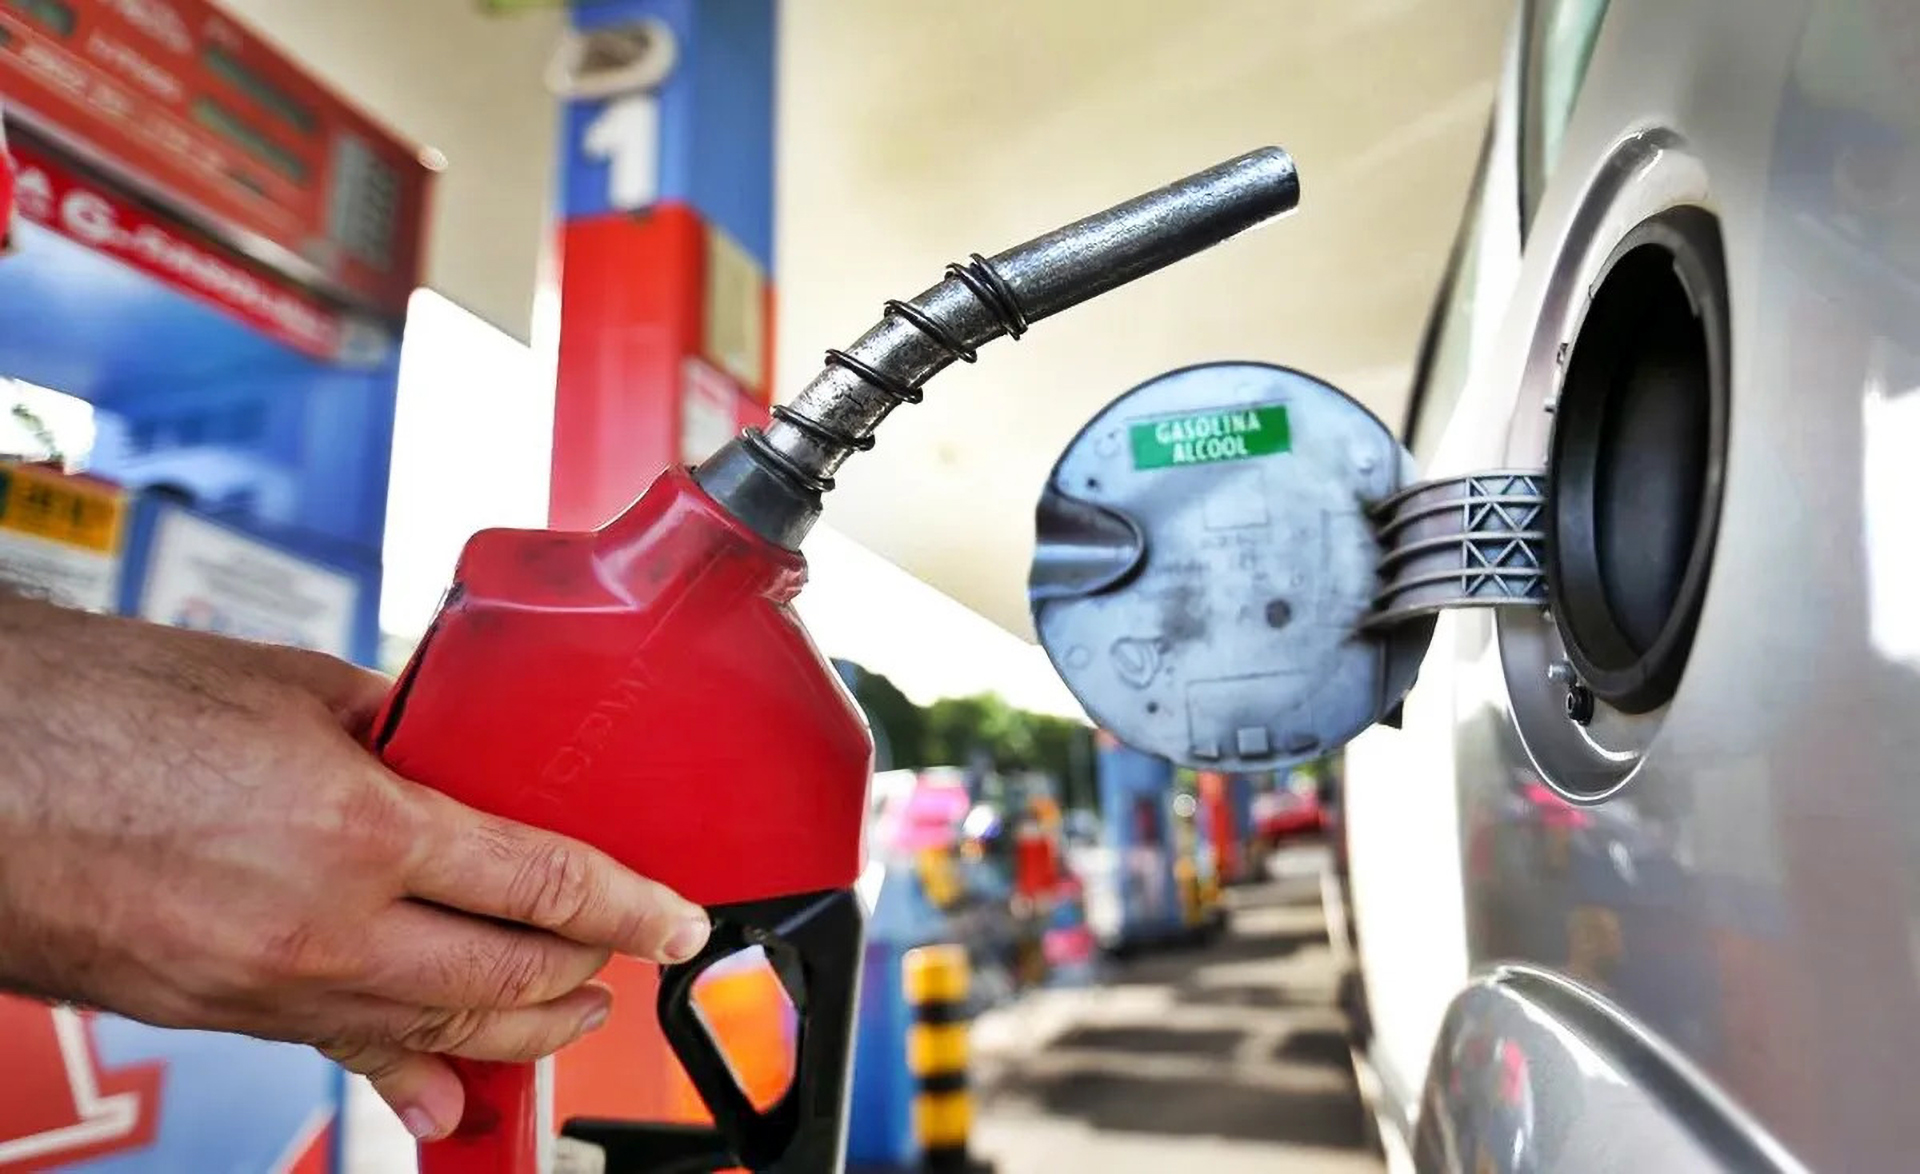 Refinaria da Acelen anuncia mais um aumento nos preços da gasolina e diesel, enquanto Petrobras continua com preços inalterados